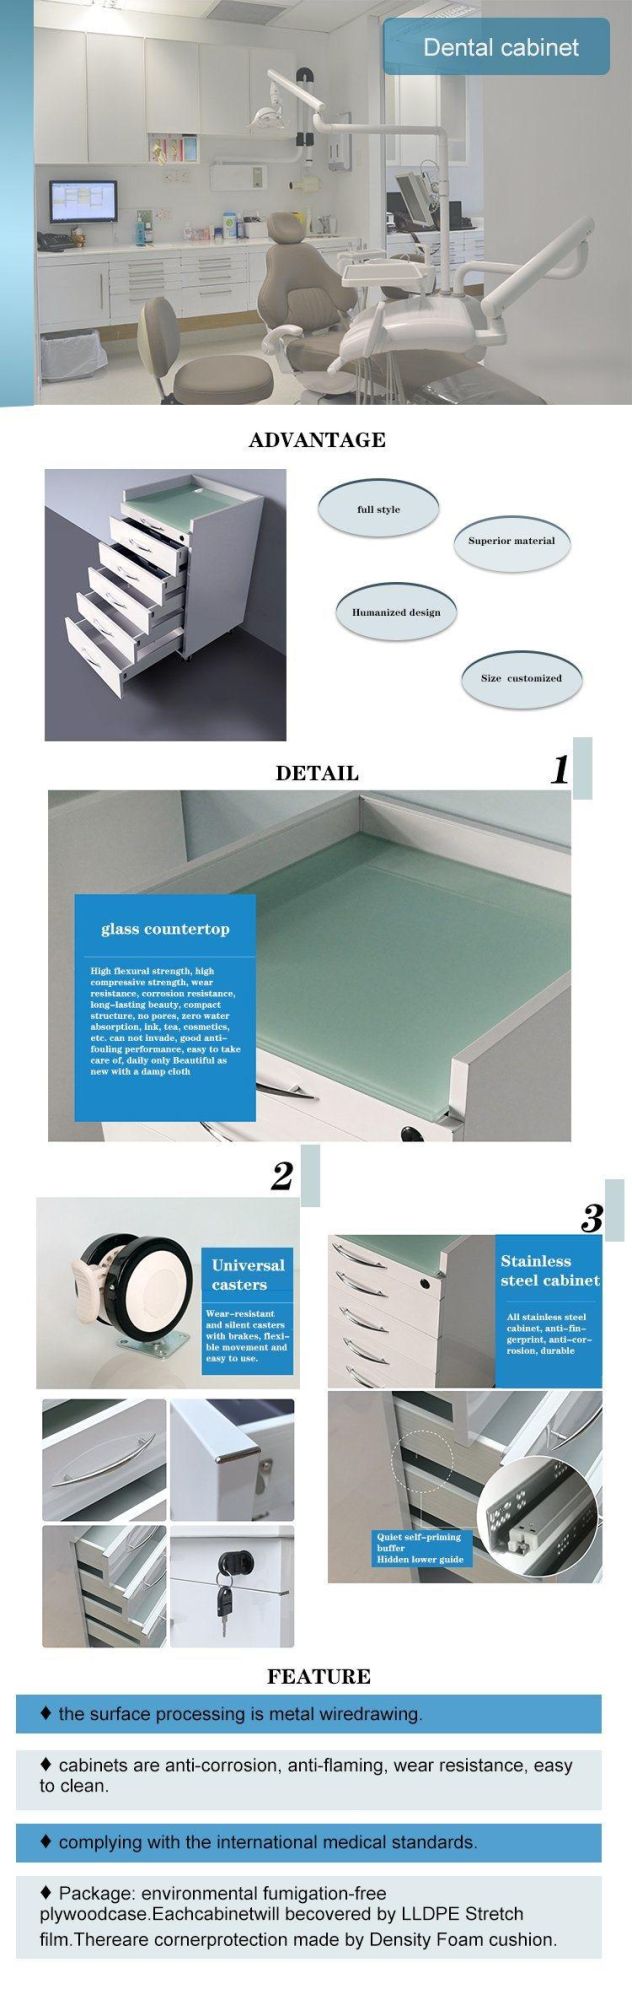 Mobile Clinic Dental Cabinet, Dental Furniture